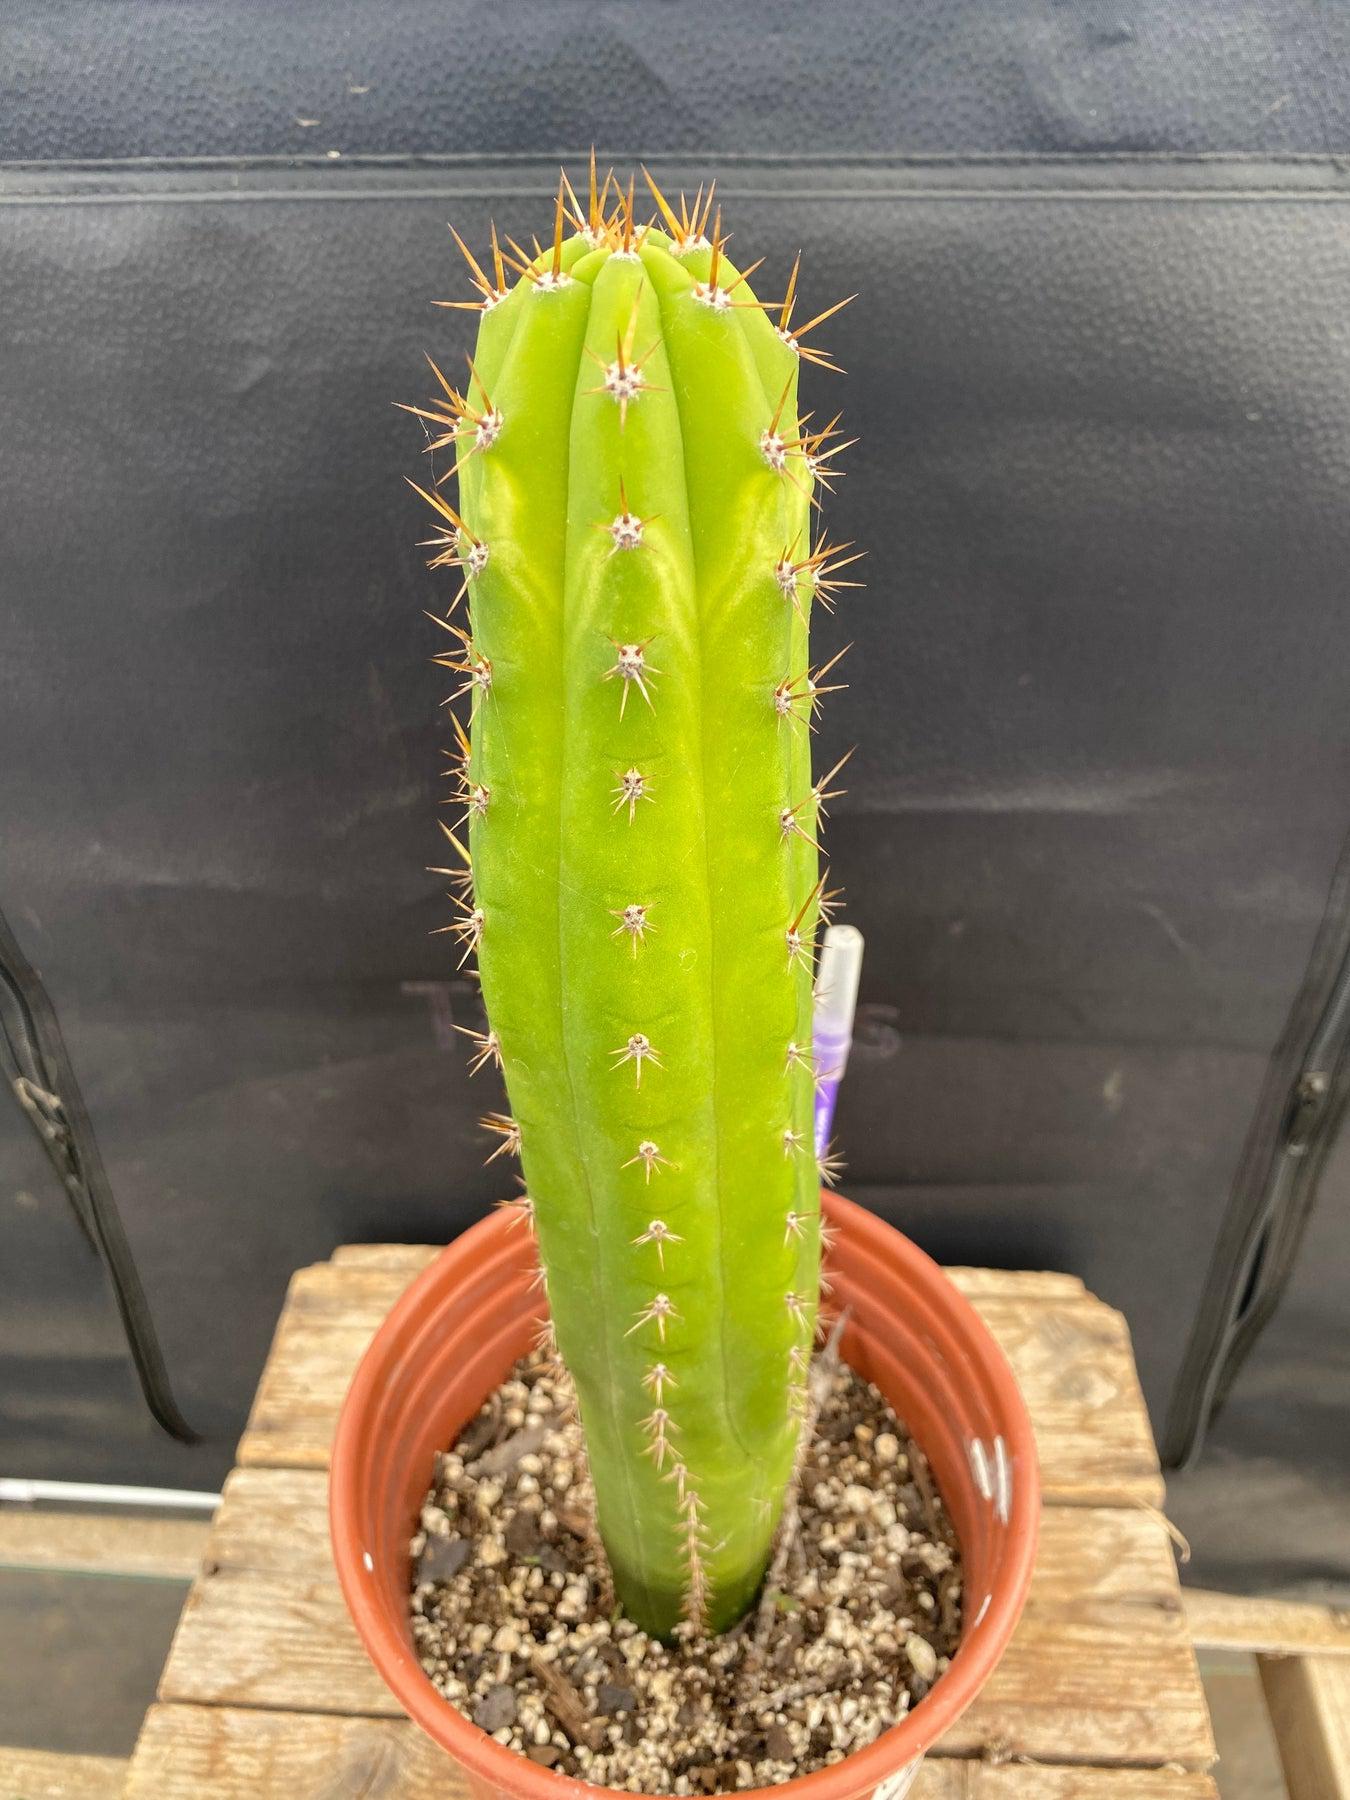 #EC283 EXACT Trichocereus Hybrid Lost Label Cactus 13"-Cactus - Large - Exact-The Succulent Source